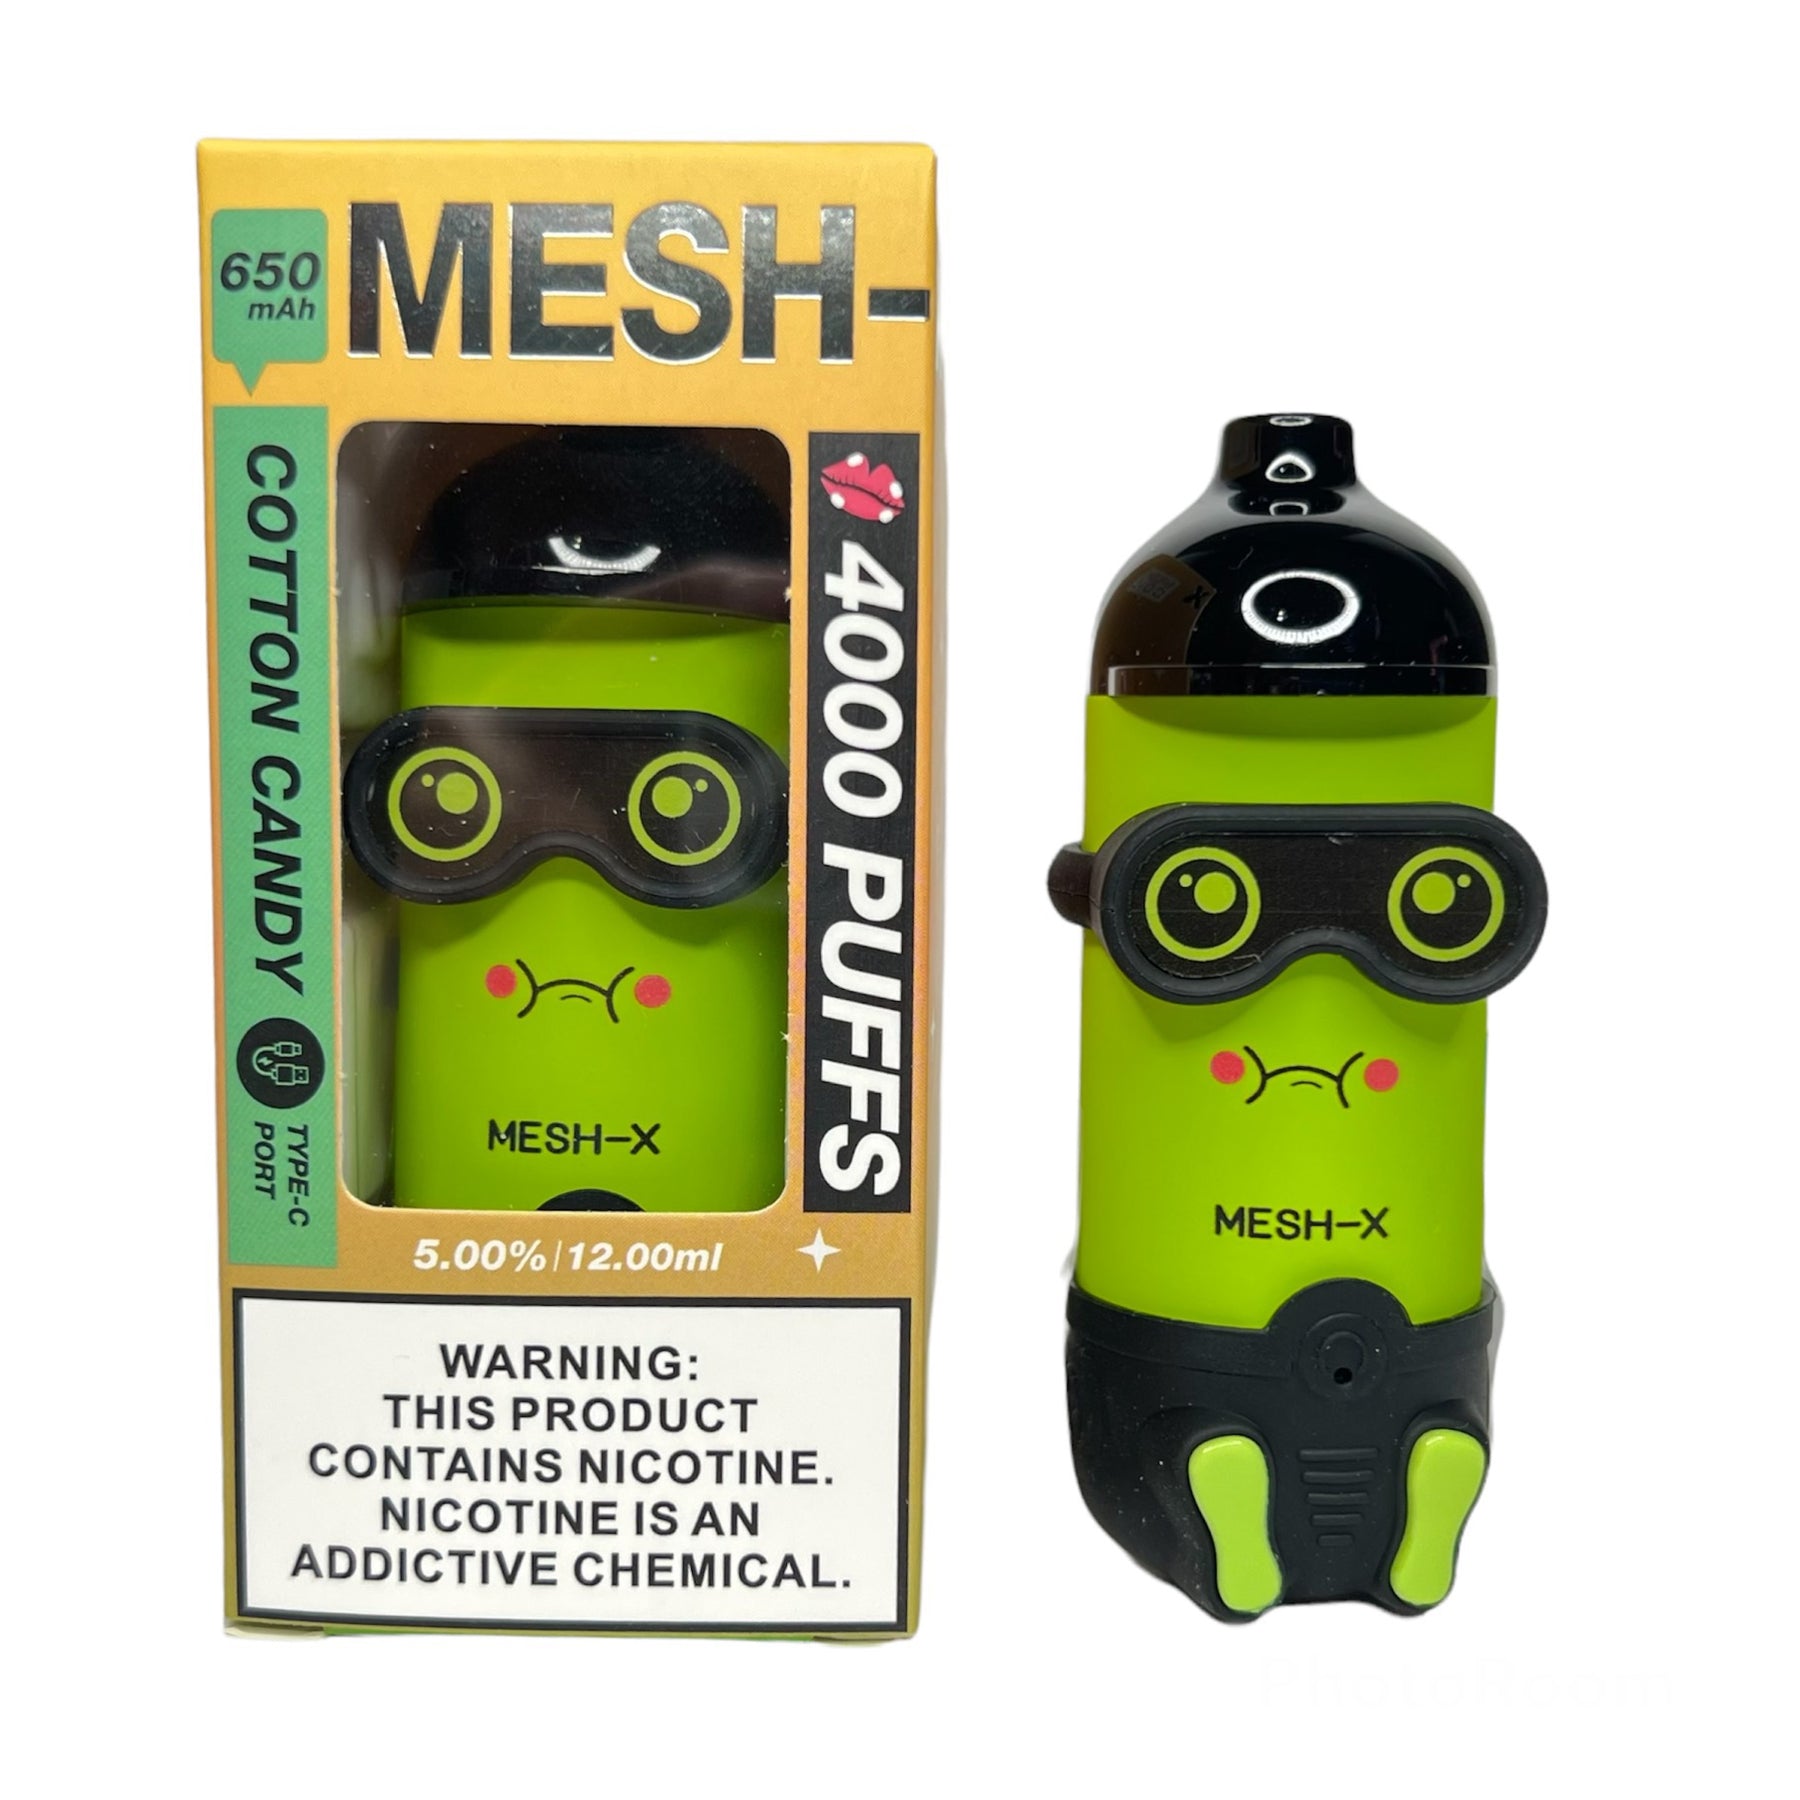 Mesh-X Rechargeable Disposable Vape - Golden Leaf Shop